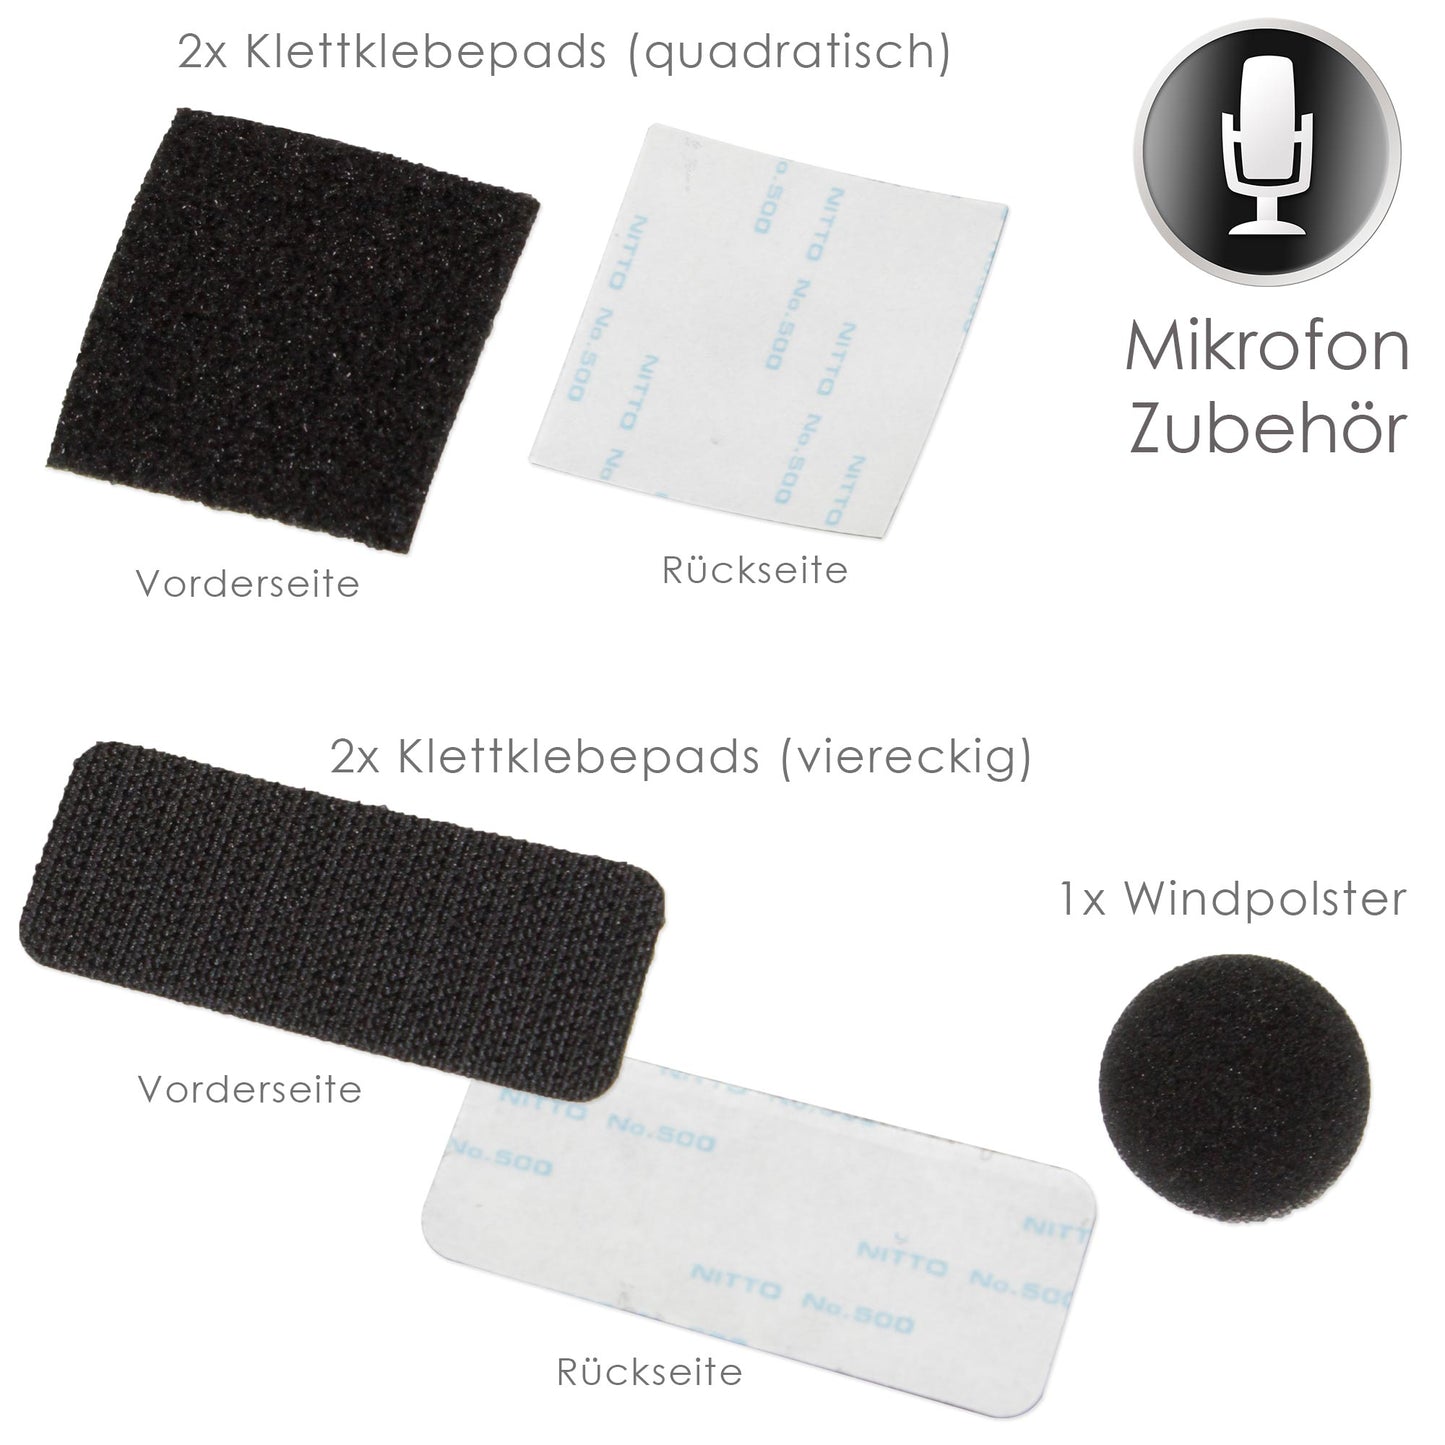 Interphone Windpolster für universale Mikrofone - Mikrofonschutz gegen Wind